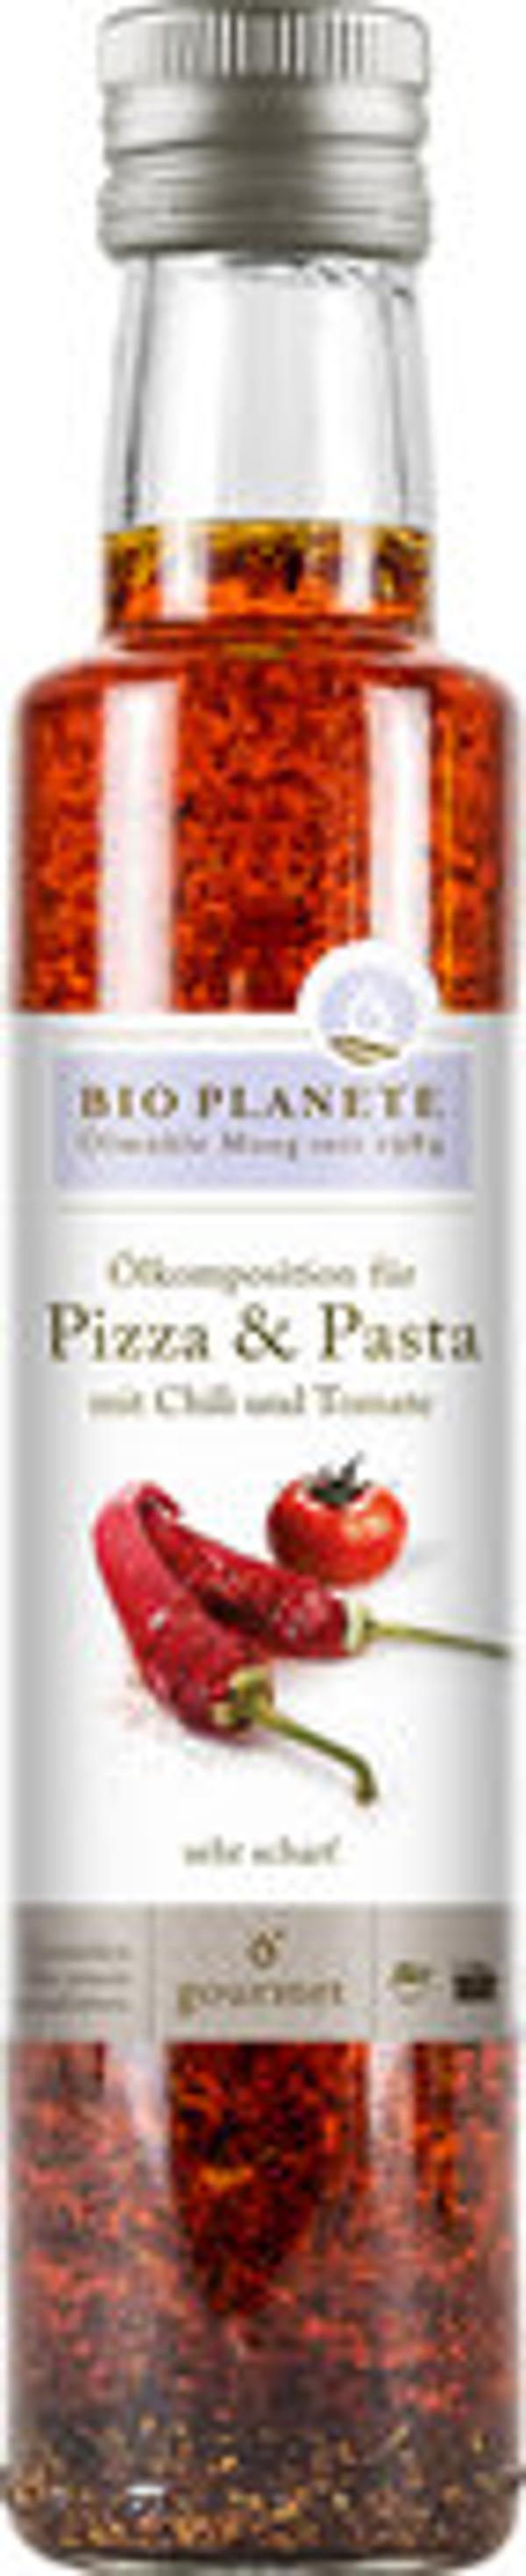 Produktfoto zu Ölkomposition für Pizza & Pasta 250ml